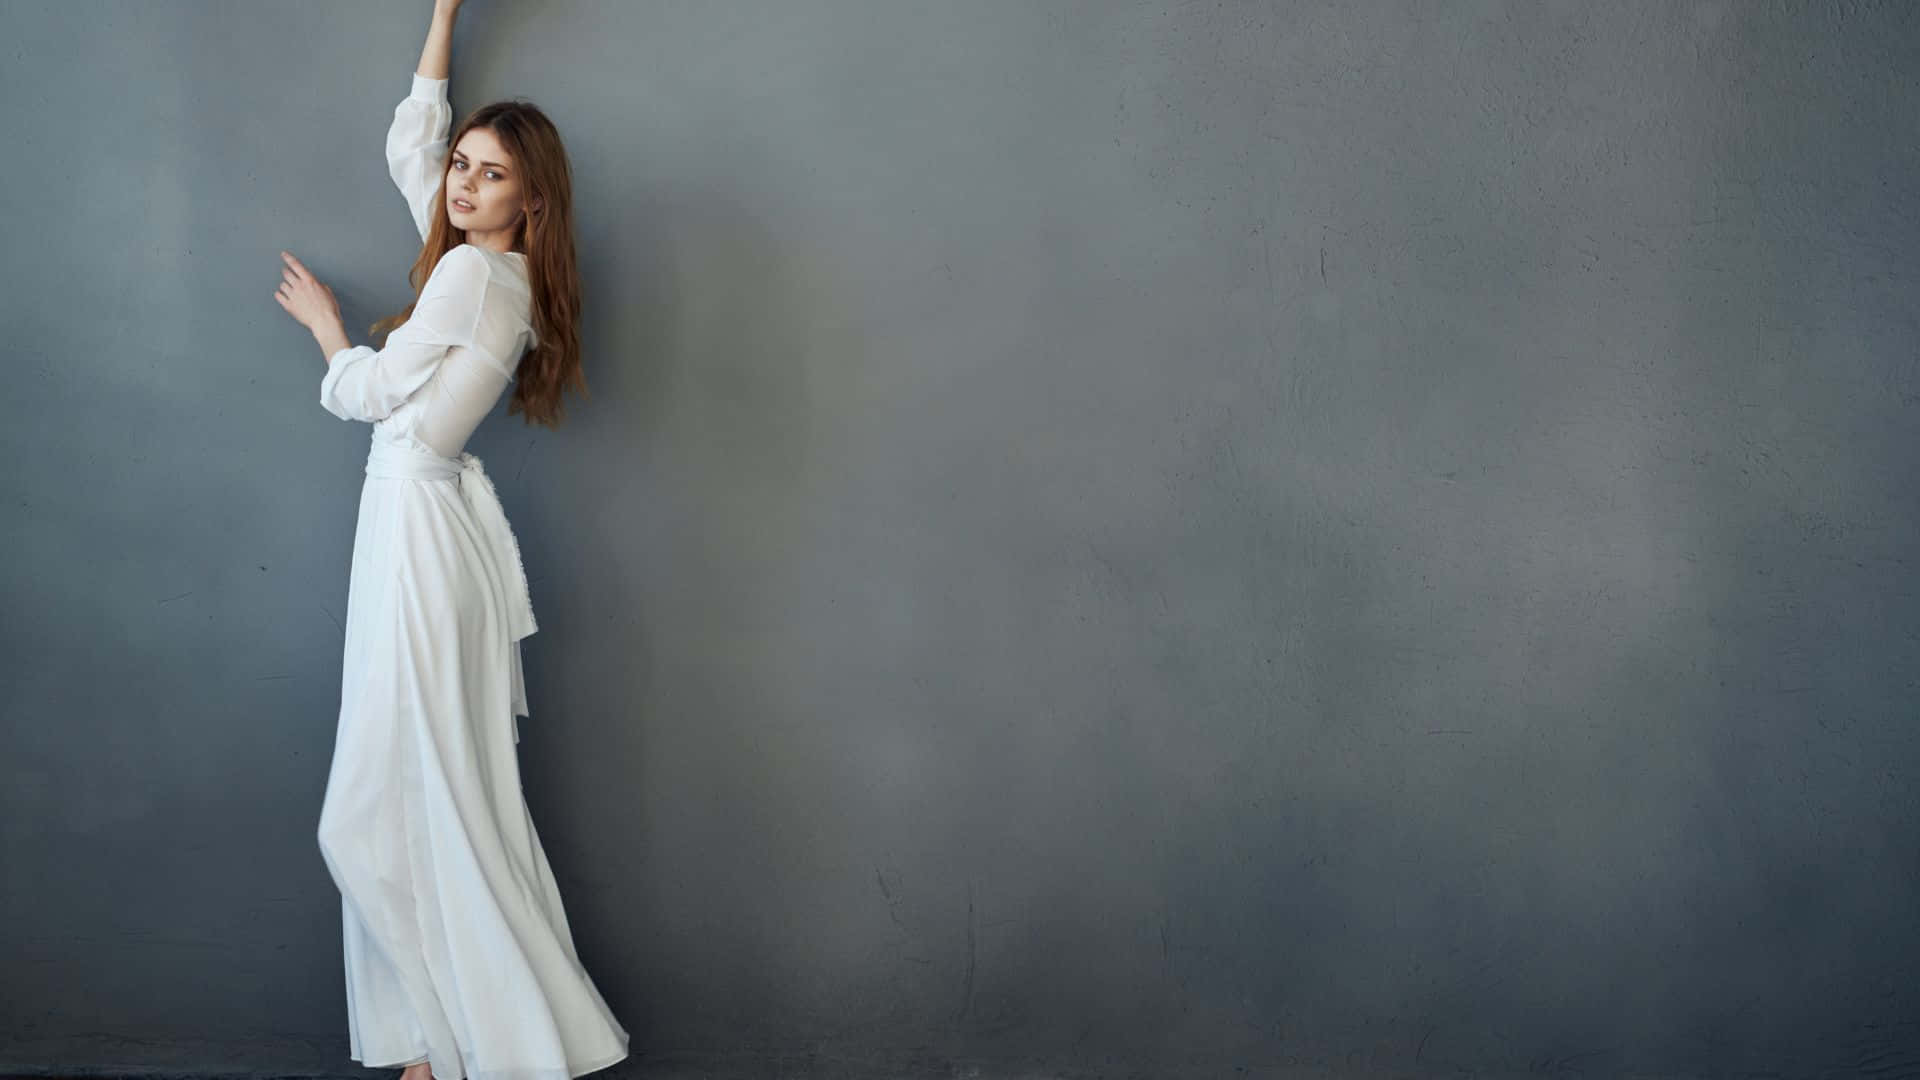 Einefrau In Einem Weißen Kleid, Die Sich An Eine Graue Wand Lehnt.